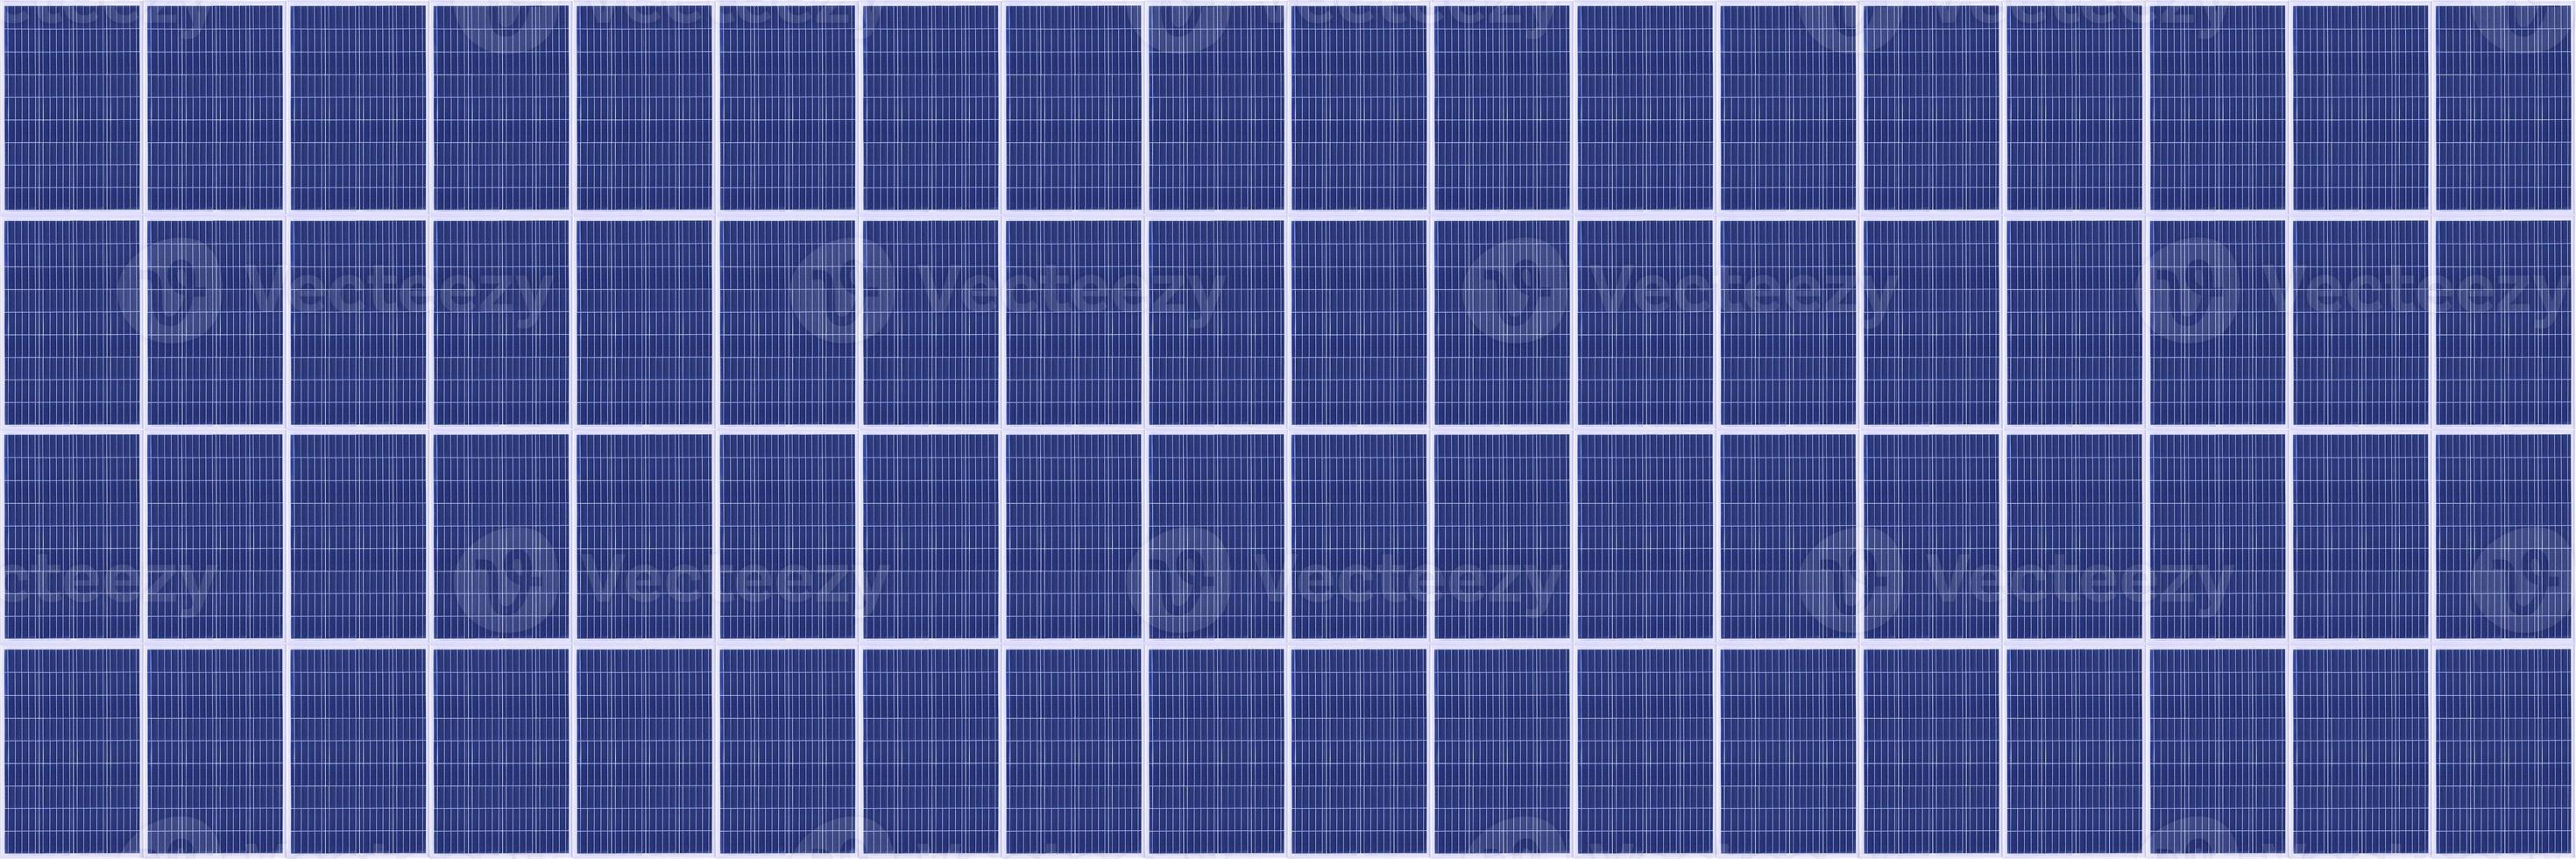 Solarpanel Solargeneratorsystem Saubere Technologie für eine bessere Zukunft foto